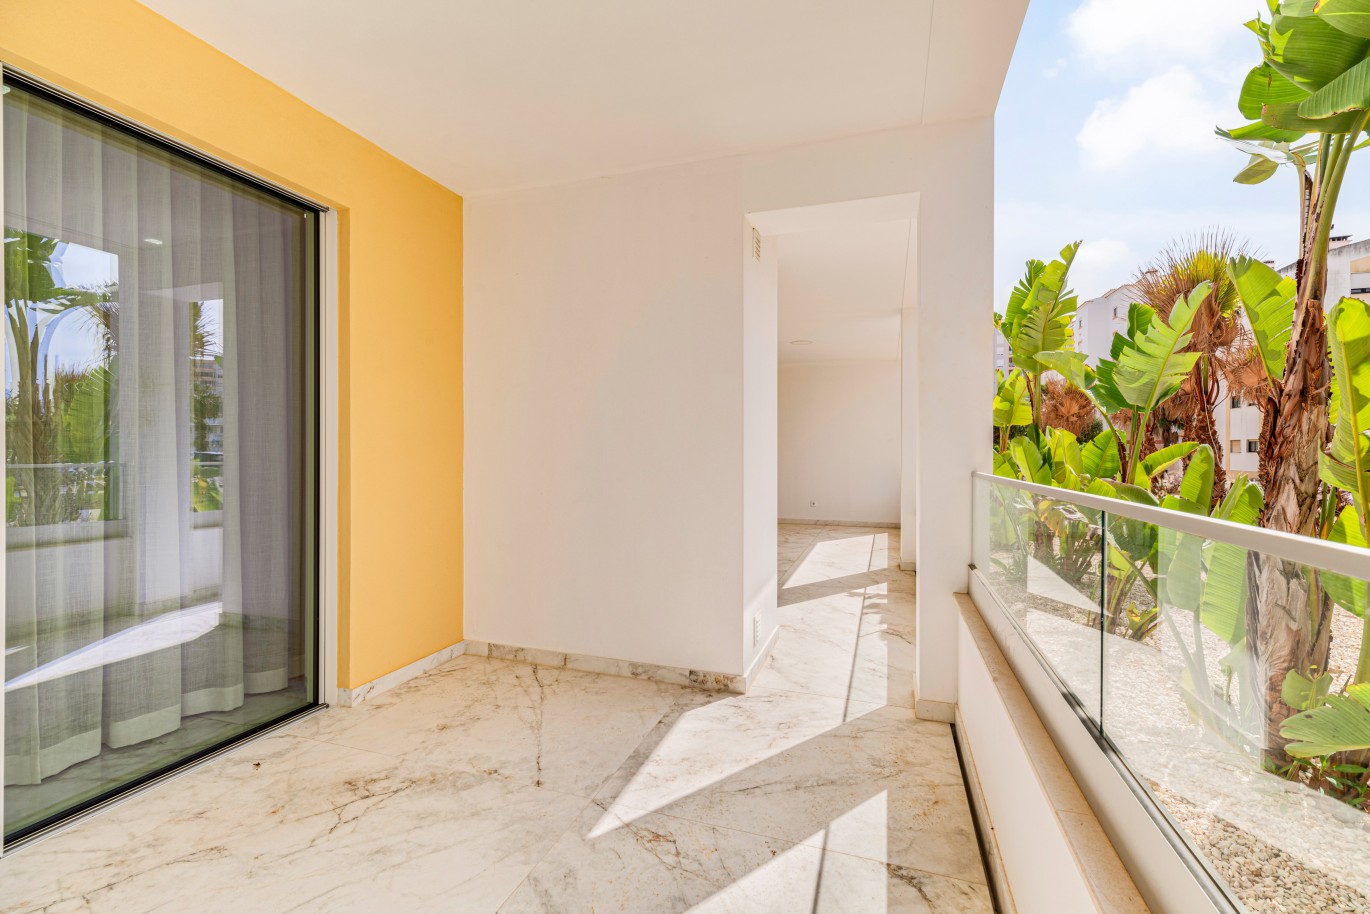 Verkauf einer Wohnung im Bau, mit Terrasse, Lagos, Algarve, Portugal_238104